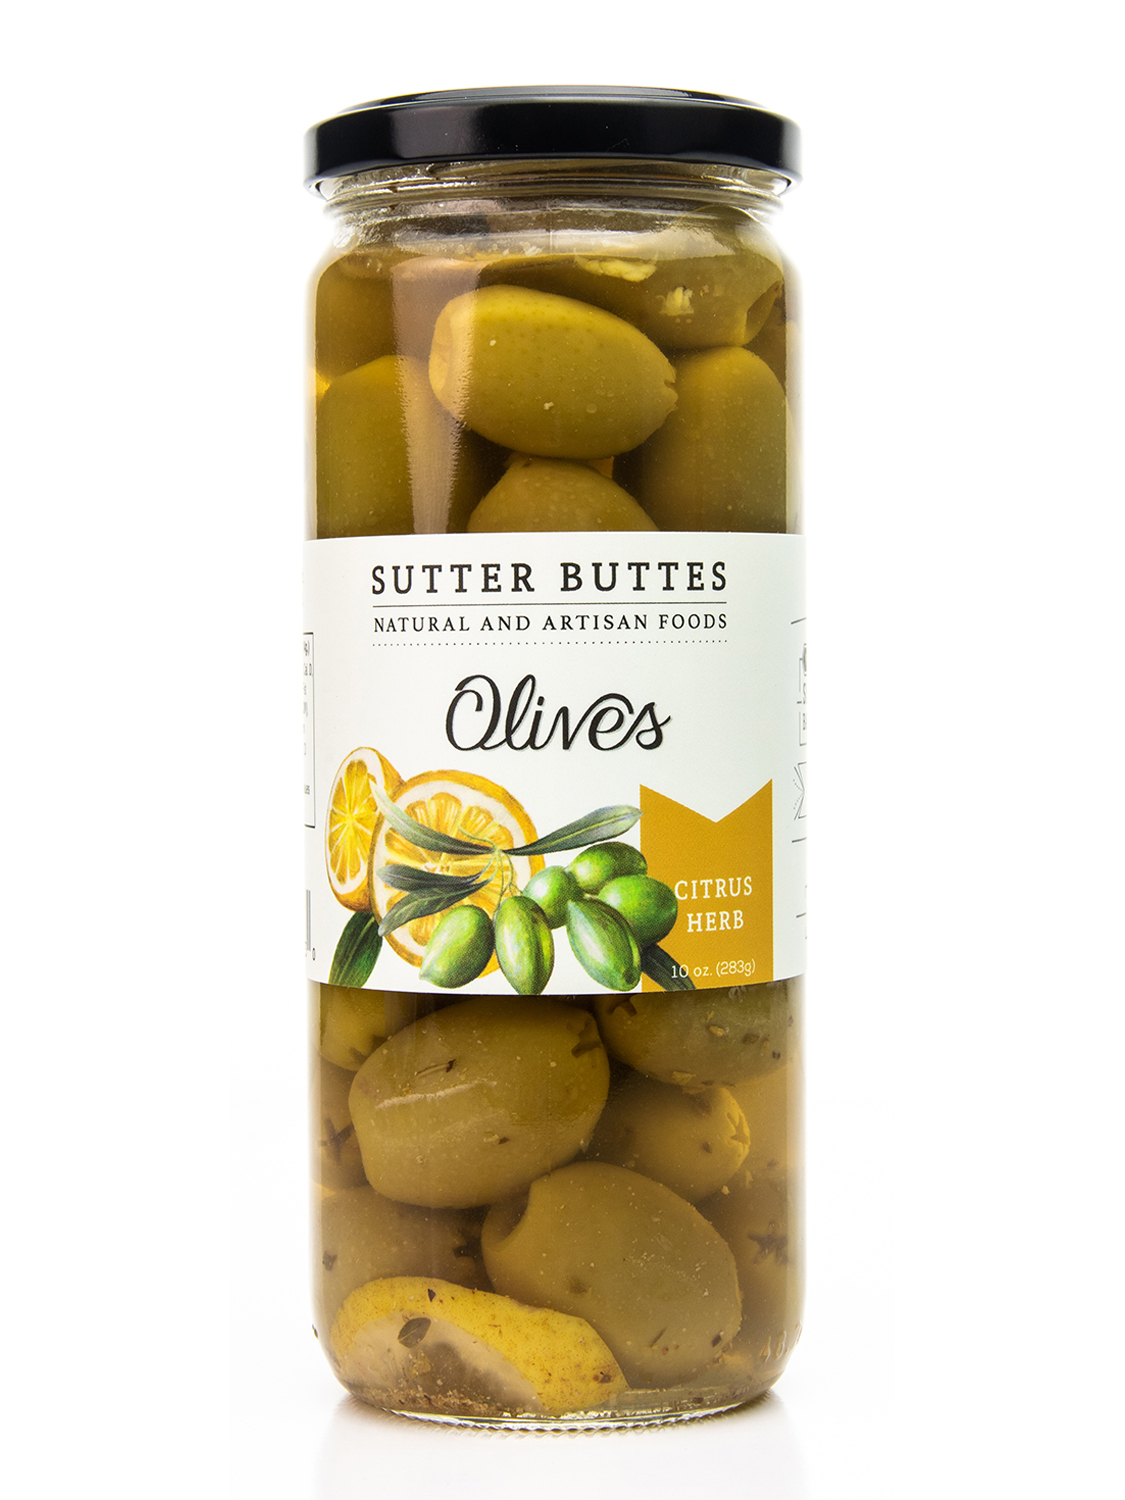 Meyer Lemon Olive Oil - Sutter Buttes Olive Oil Company